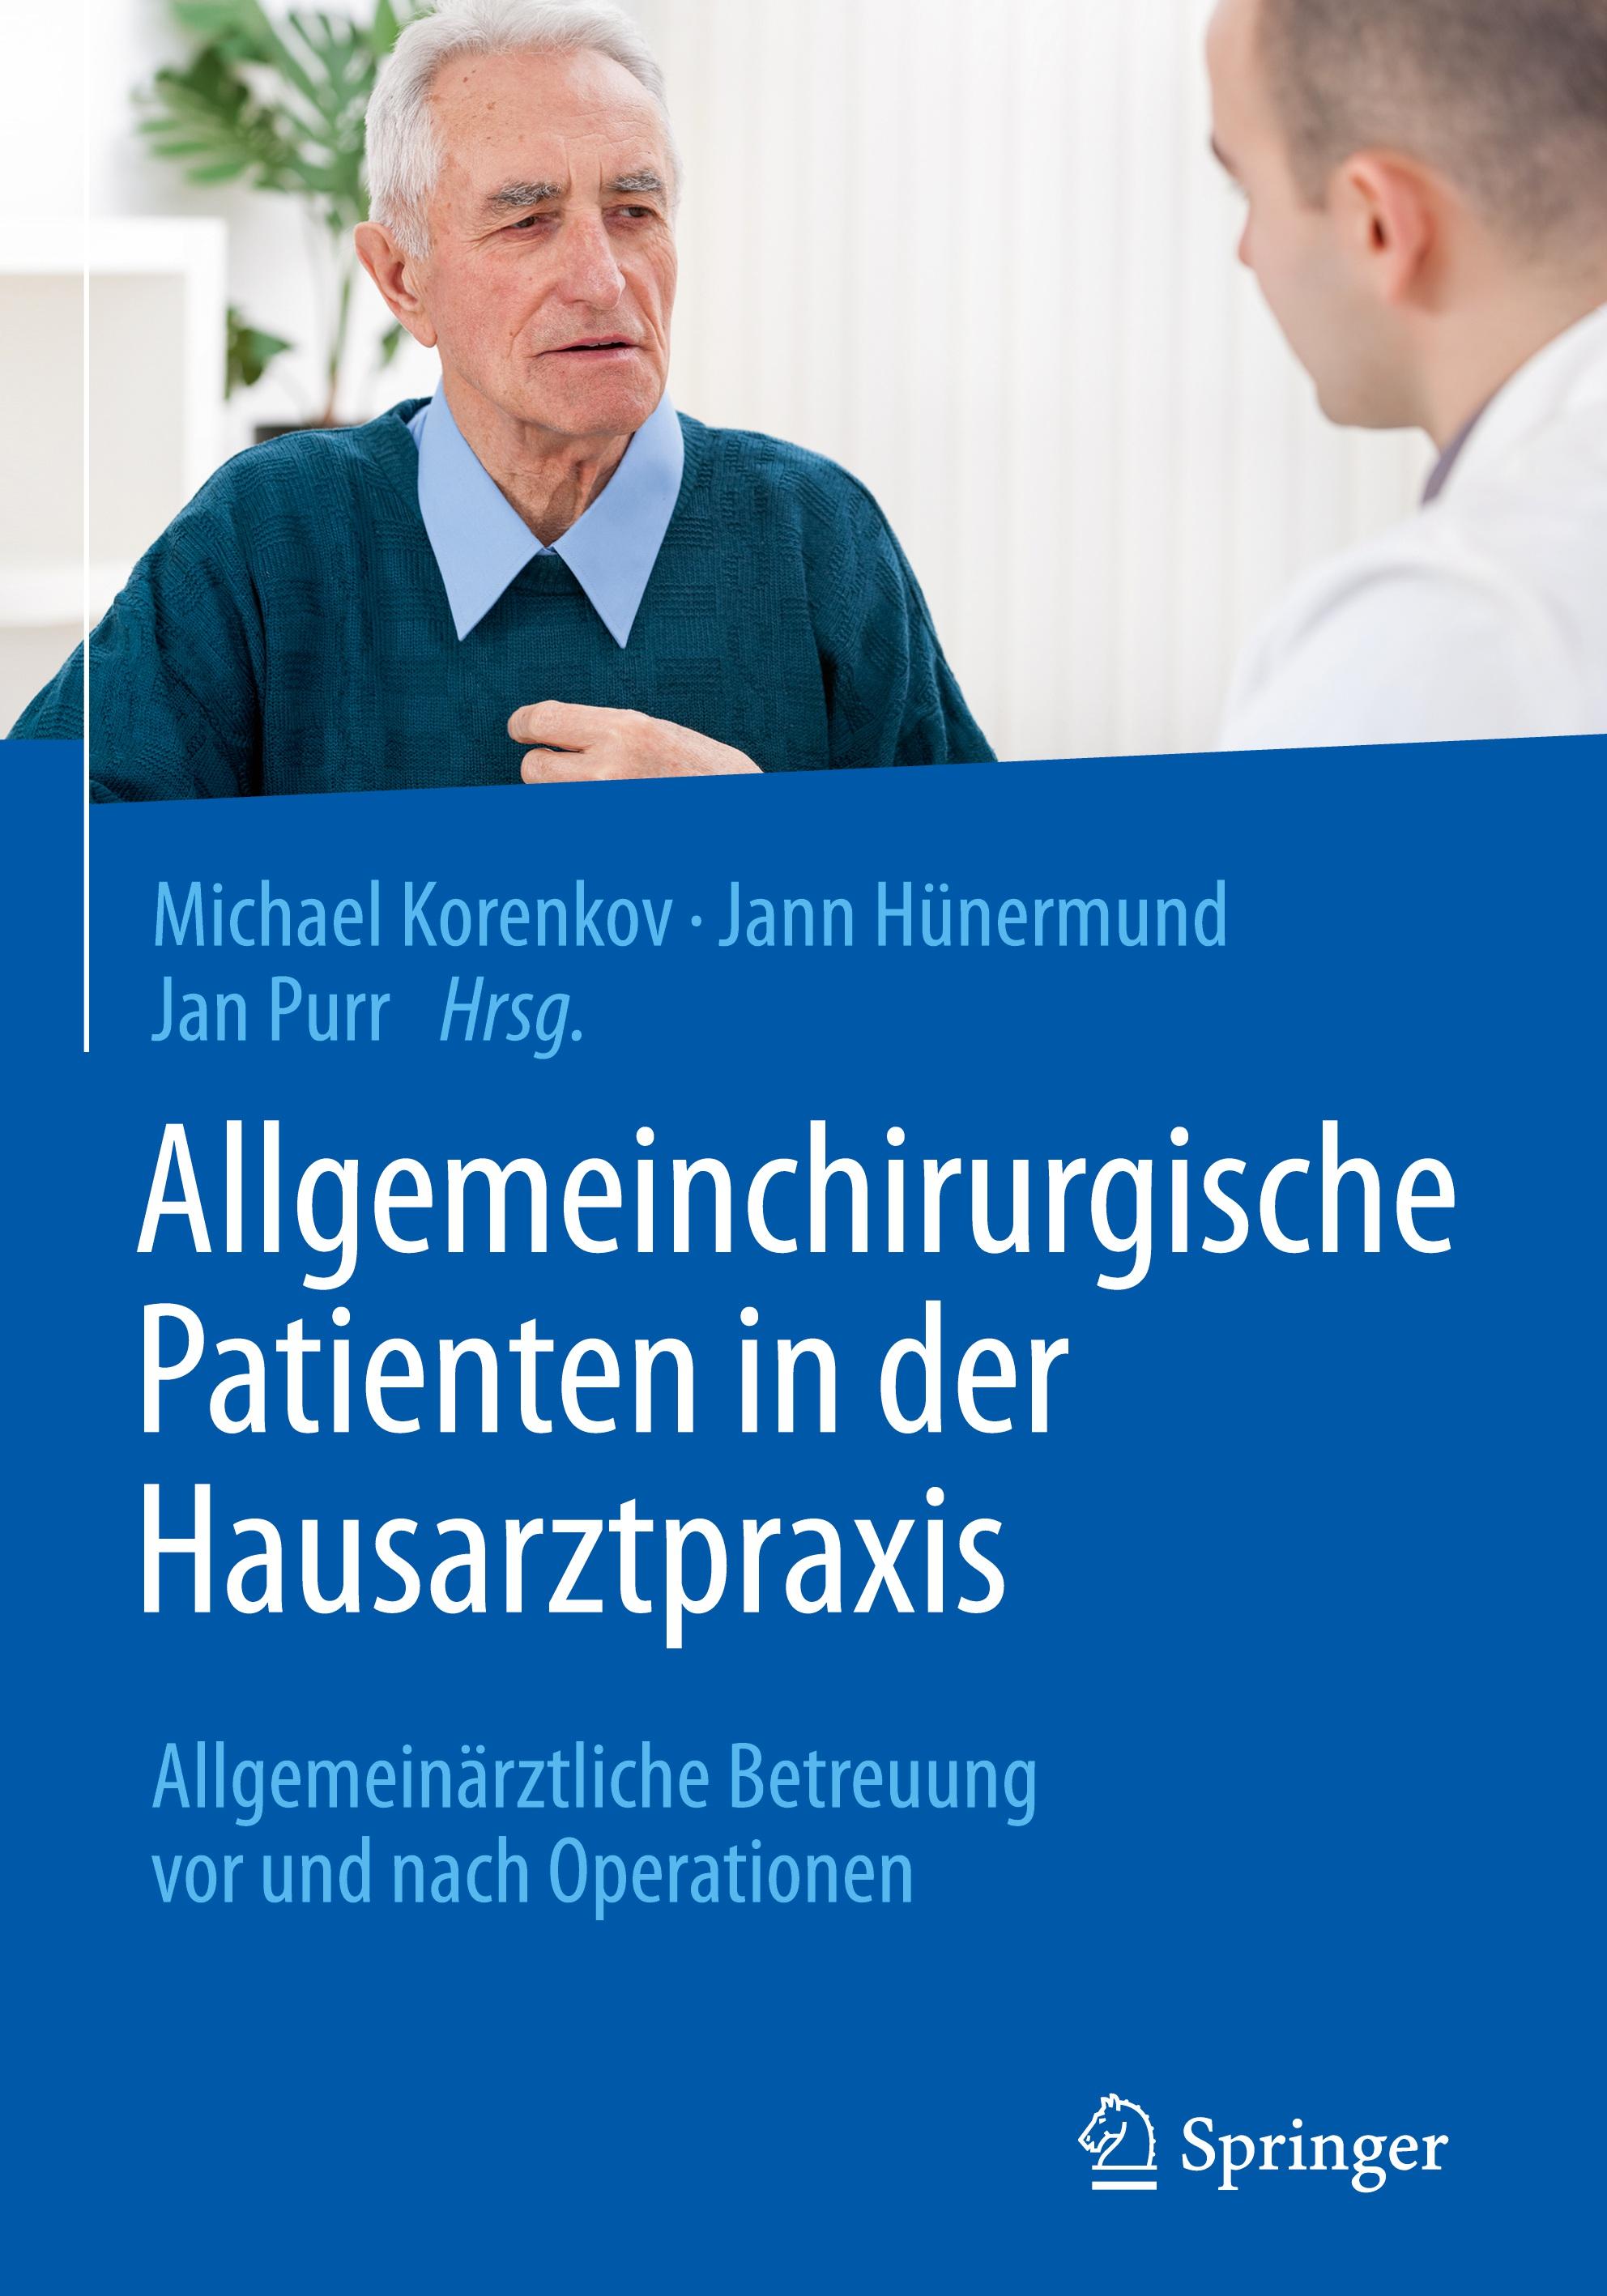 Allgemeinchirurgische Patienten in der Hausarztpraxis - Korenkov, Michael|Hünermund, Jann|Purr, Jan